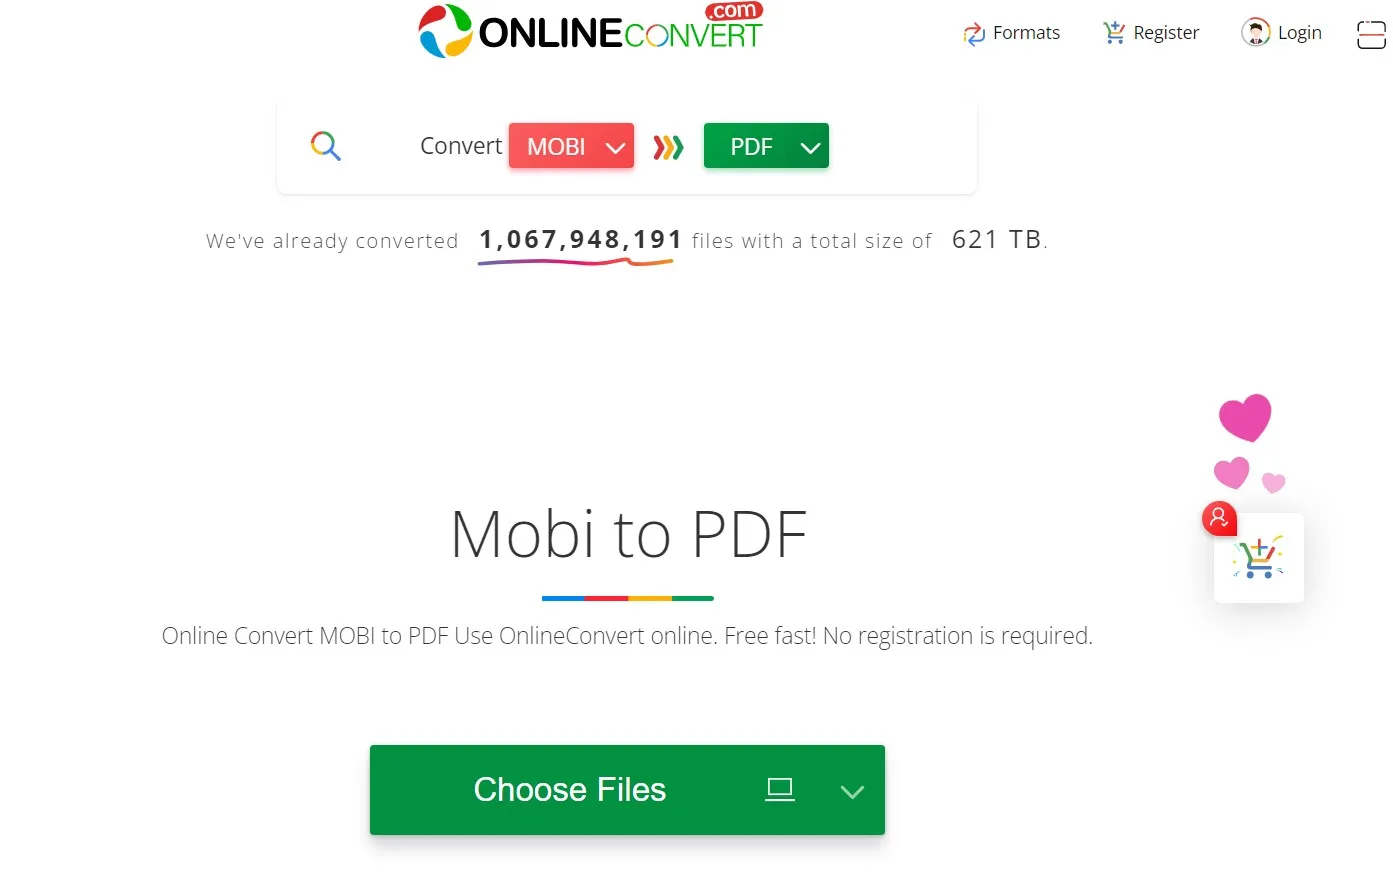 mobi to pdf OnlineConvert